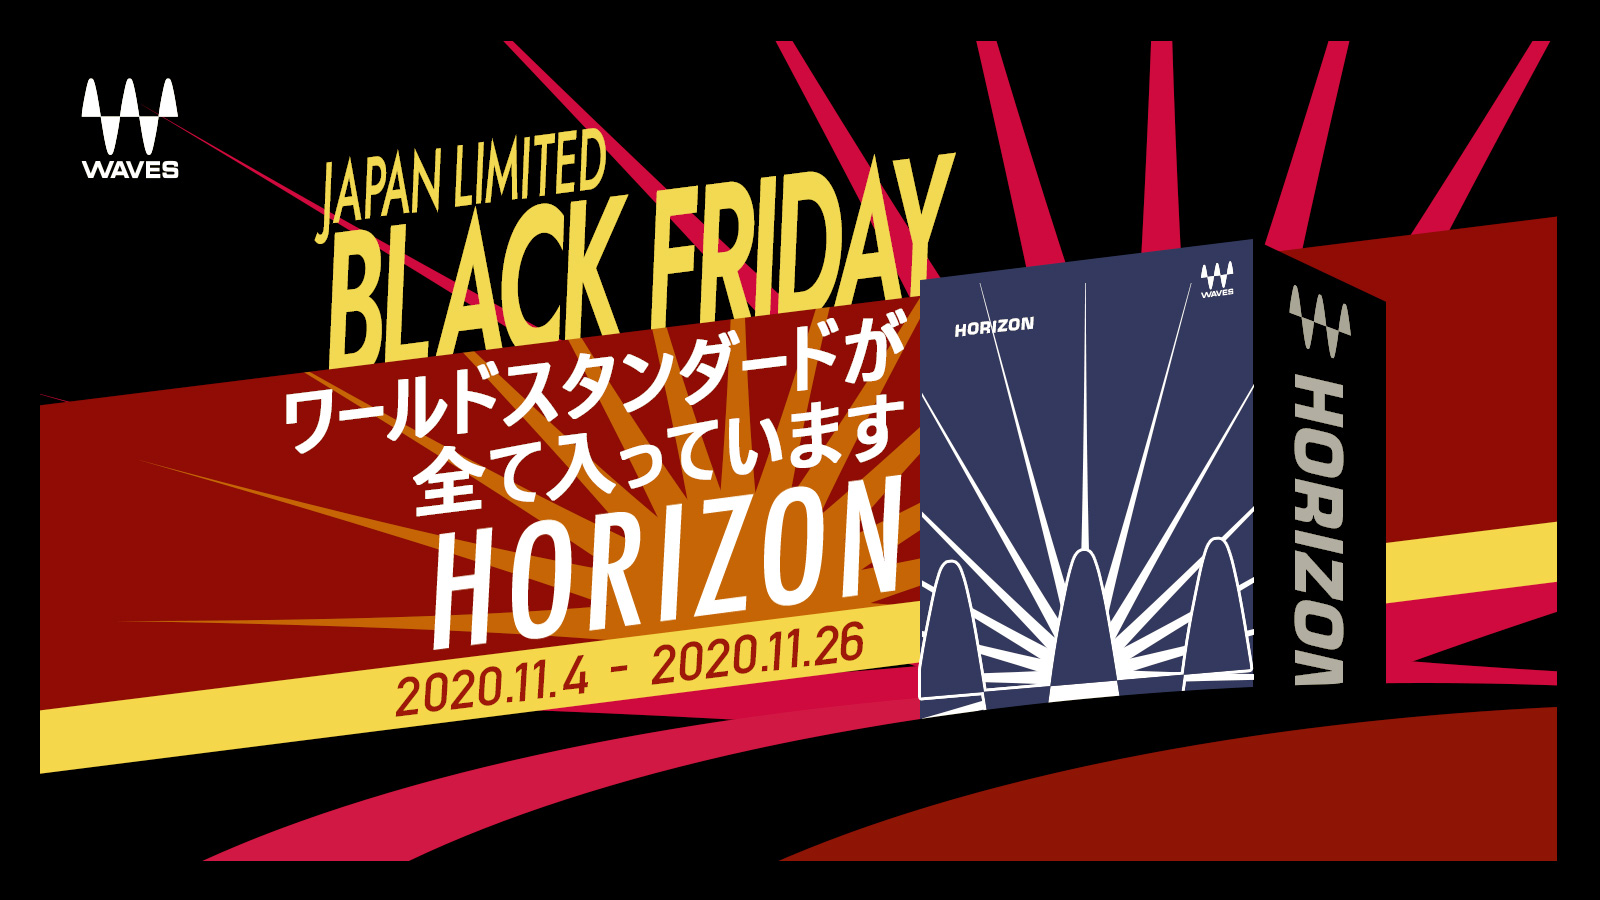 WAVES Horizonが大特価 93% OFF ! 日本限定ブラックフライデー・プロモーション